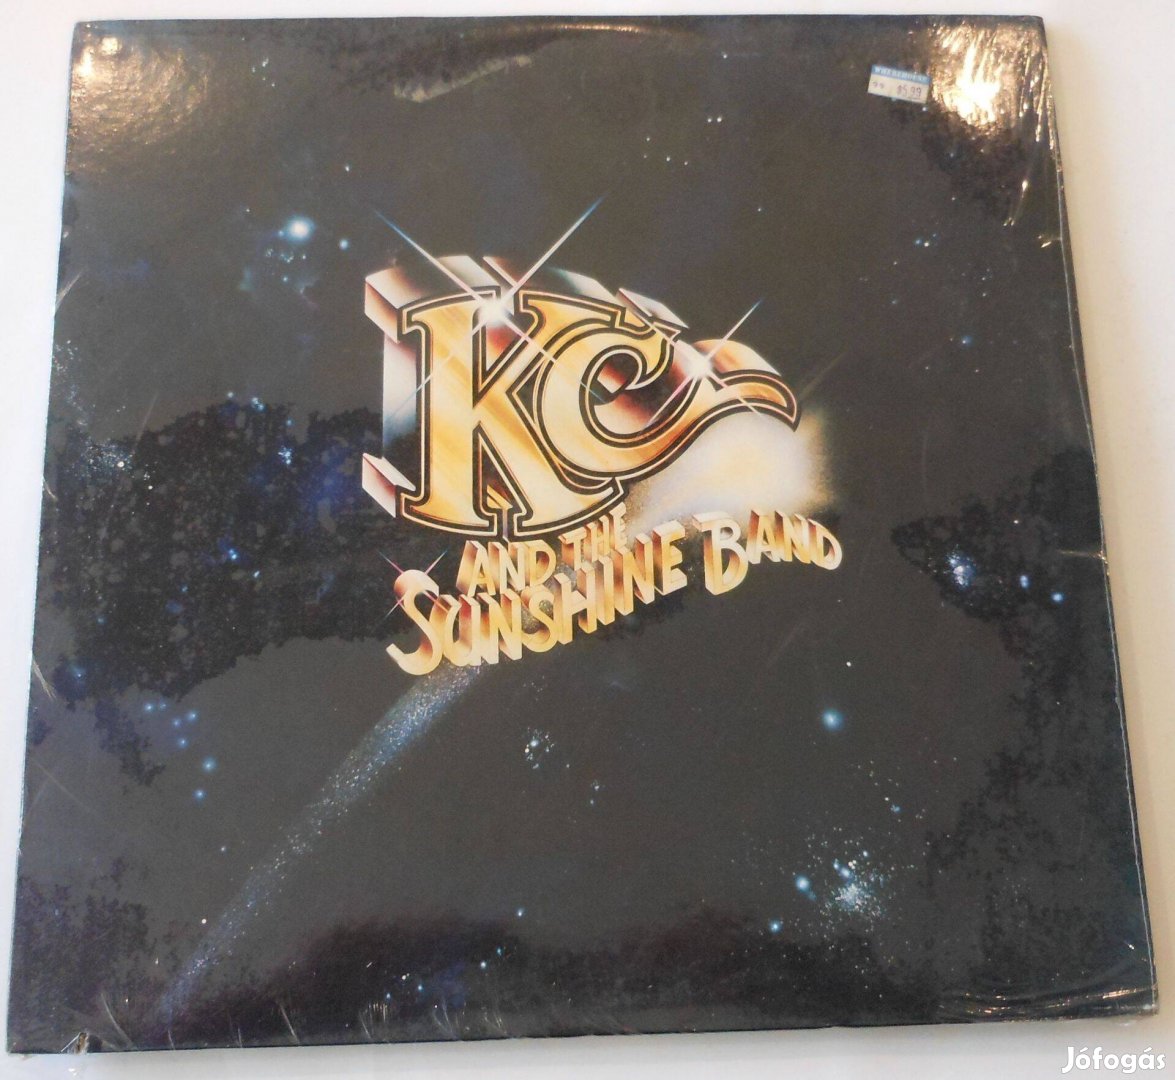 KC and the Scinshine Band LP. Új USA